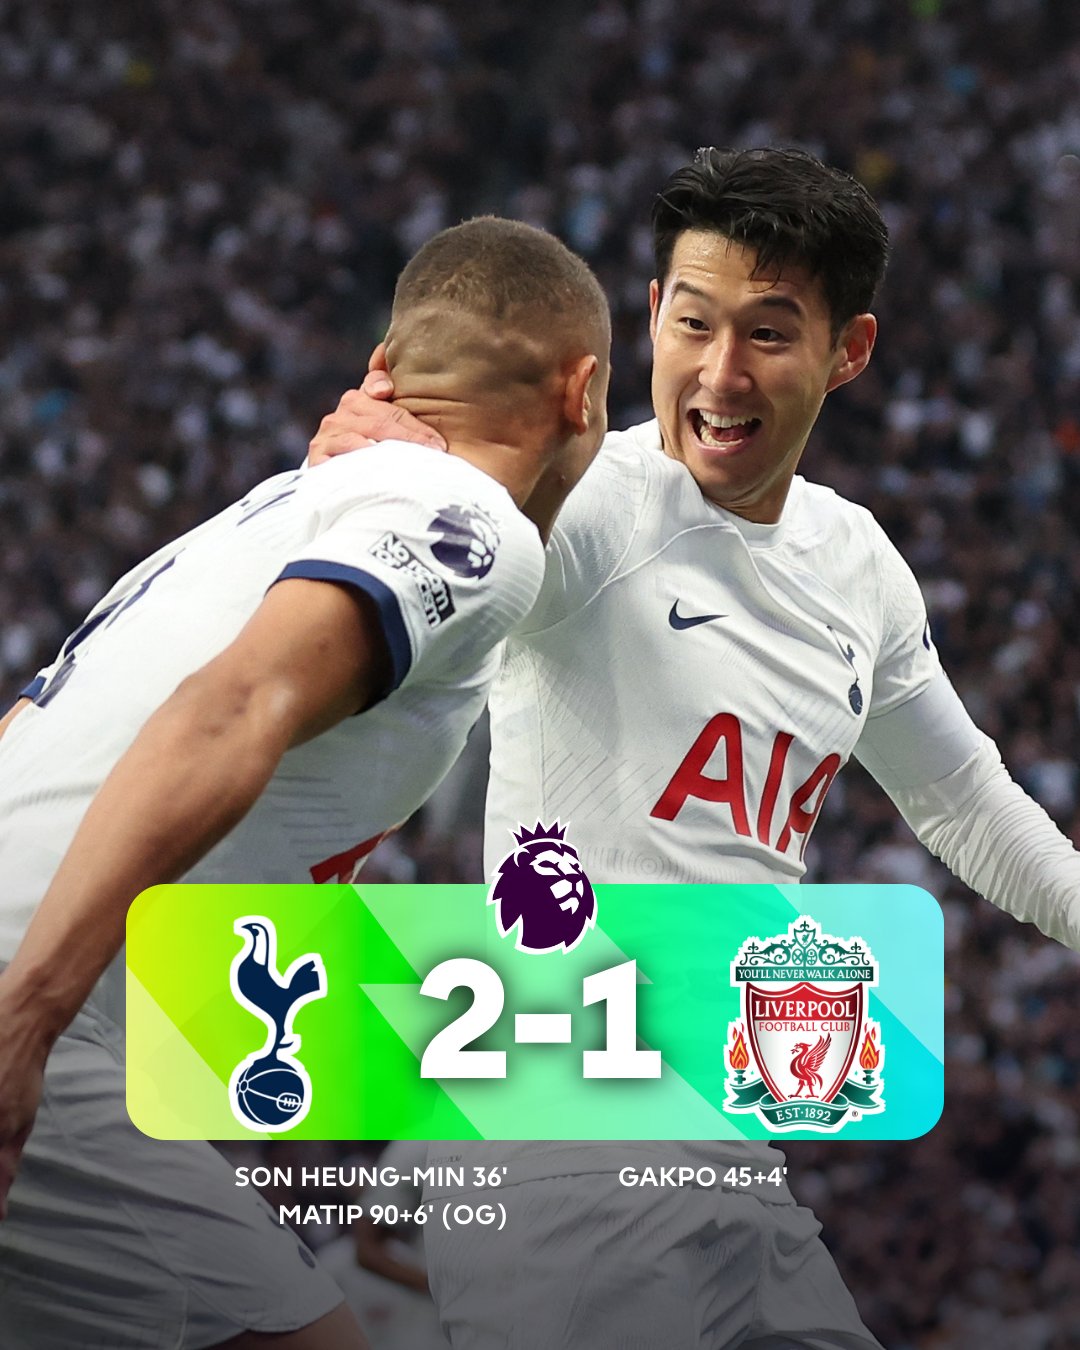 Tottenham Hotspur vs Liverpool 2-1: Premier League – as it